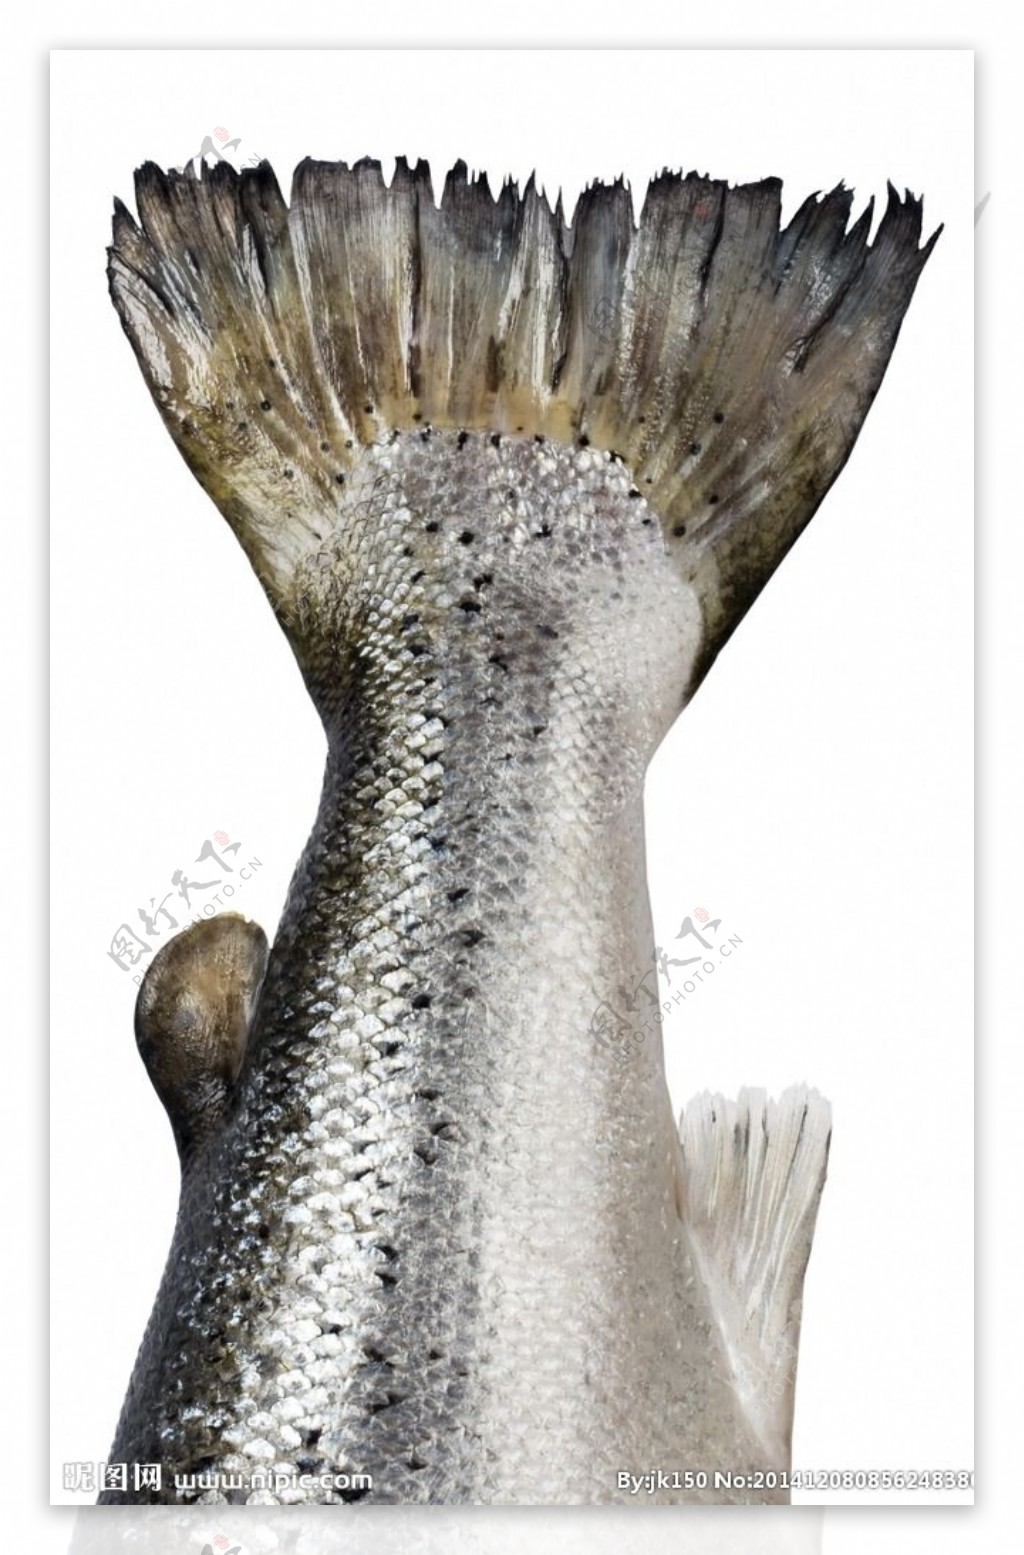 大马哈鱼-名特食品图谱-图片